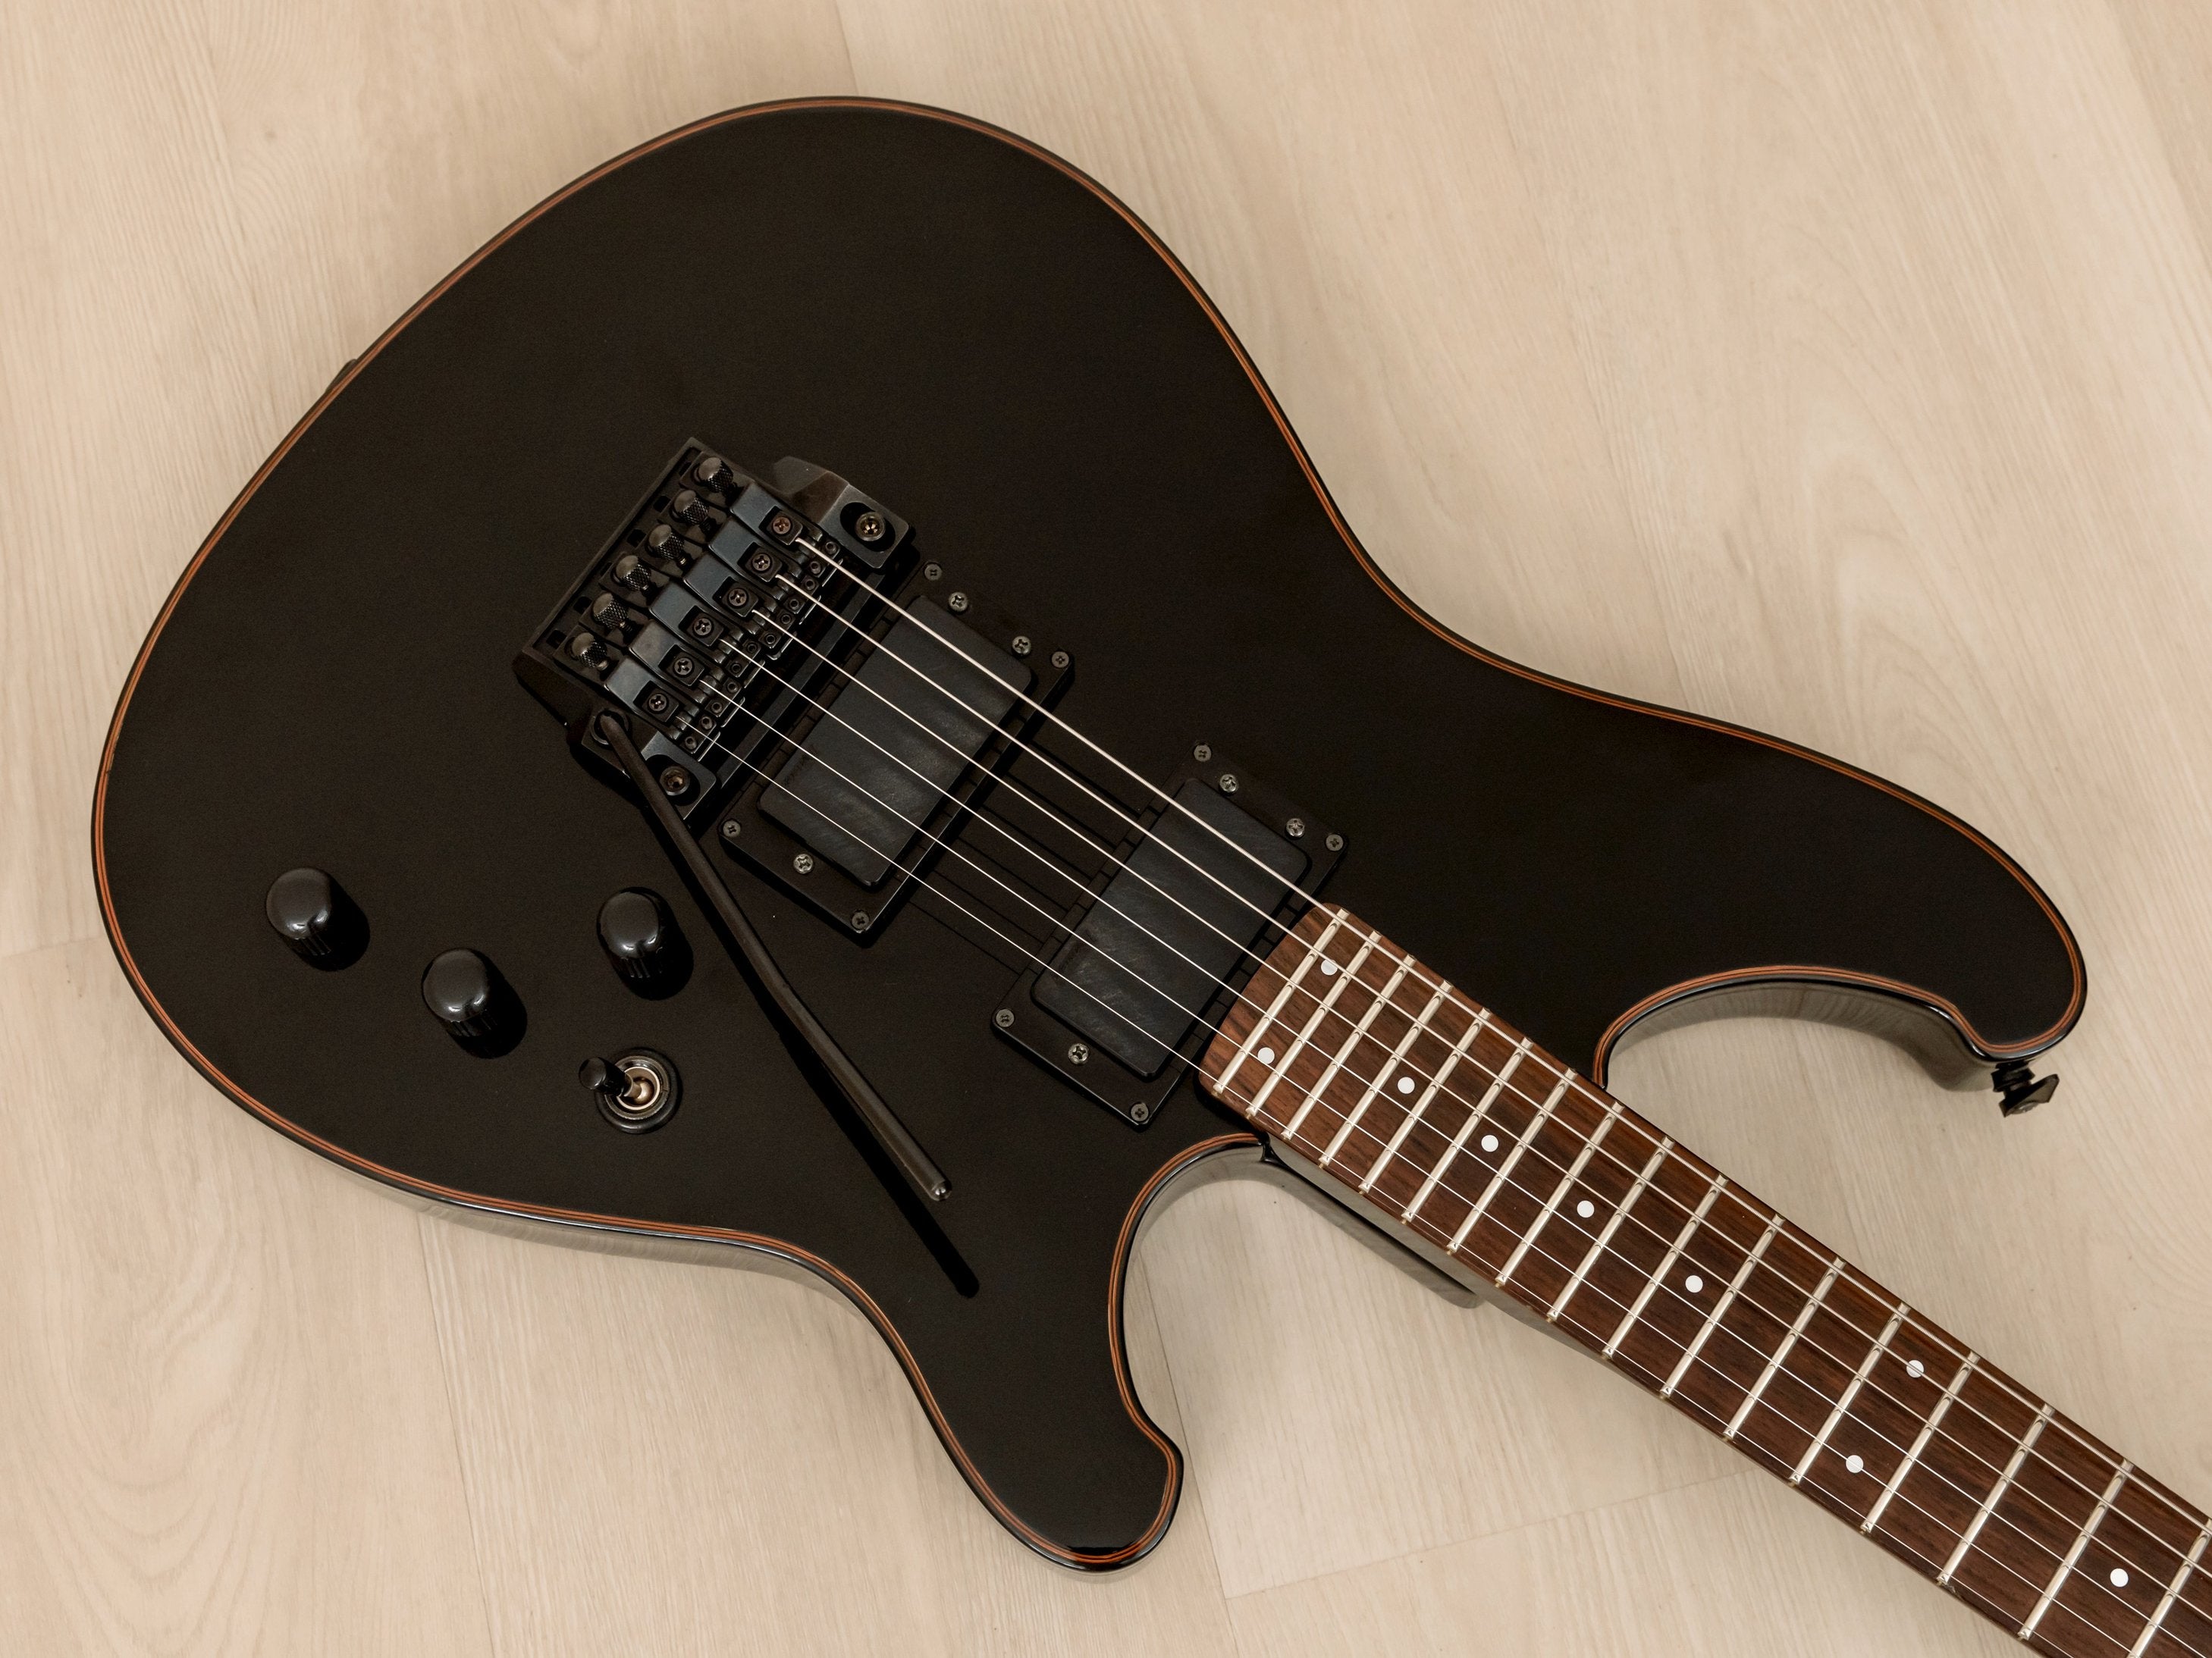 1984 Ibanez Roadstar II RS530 Vintage Guitar HH Black, Japan